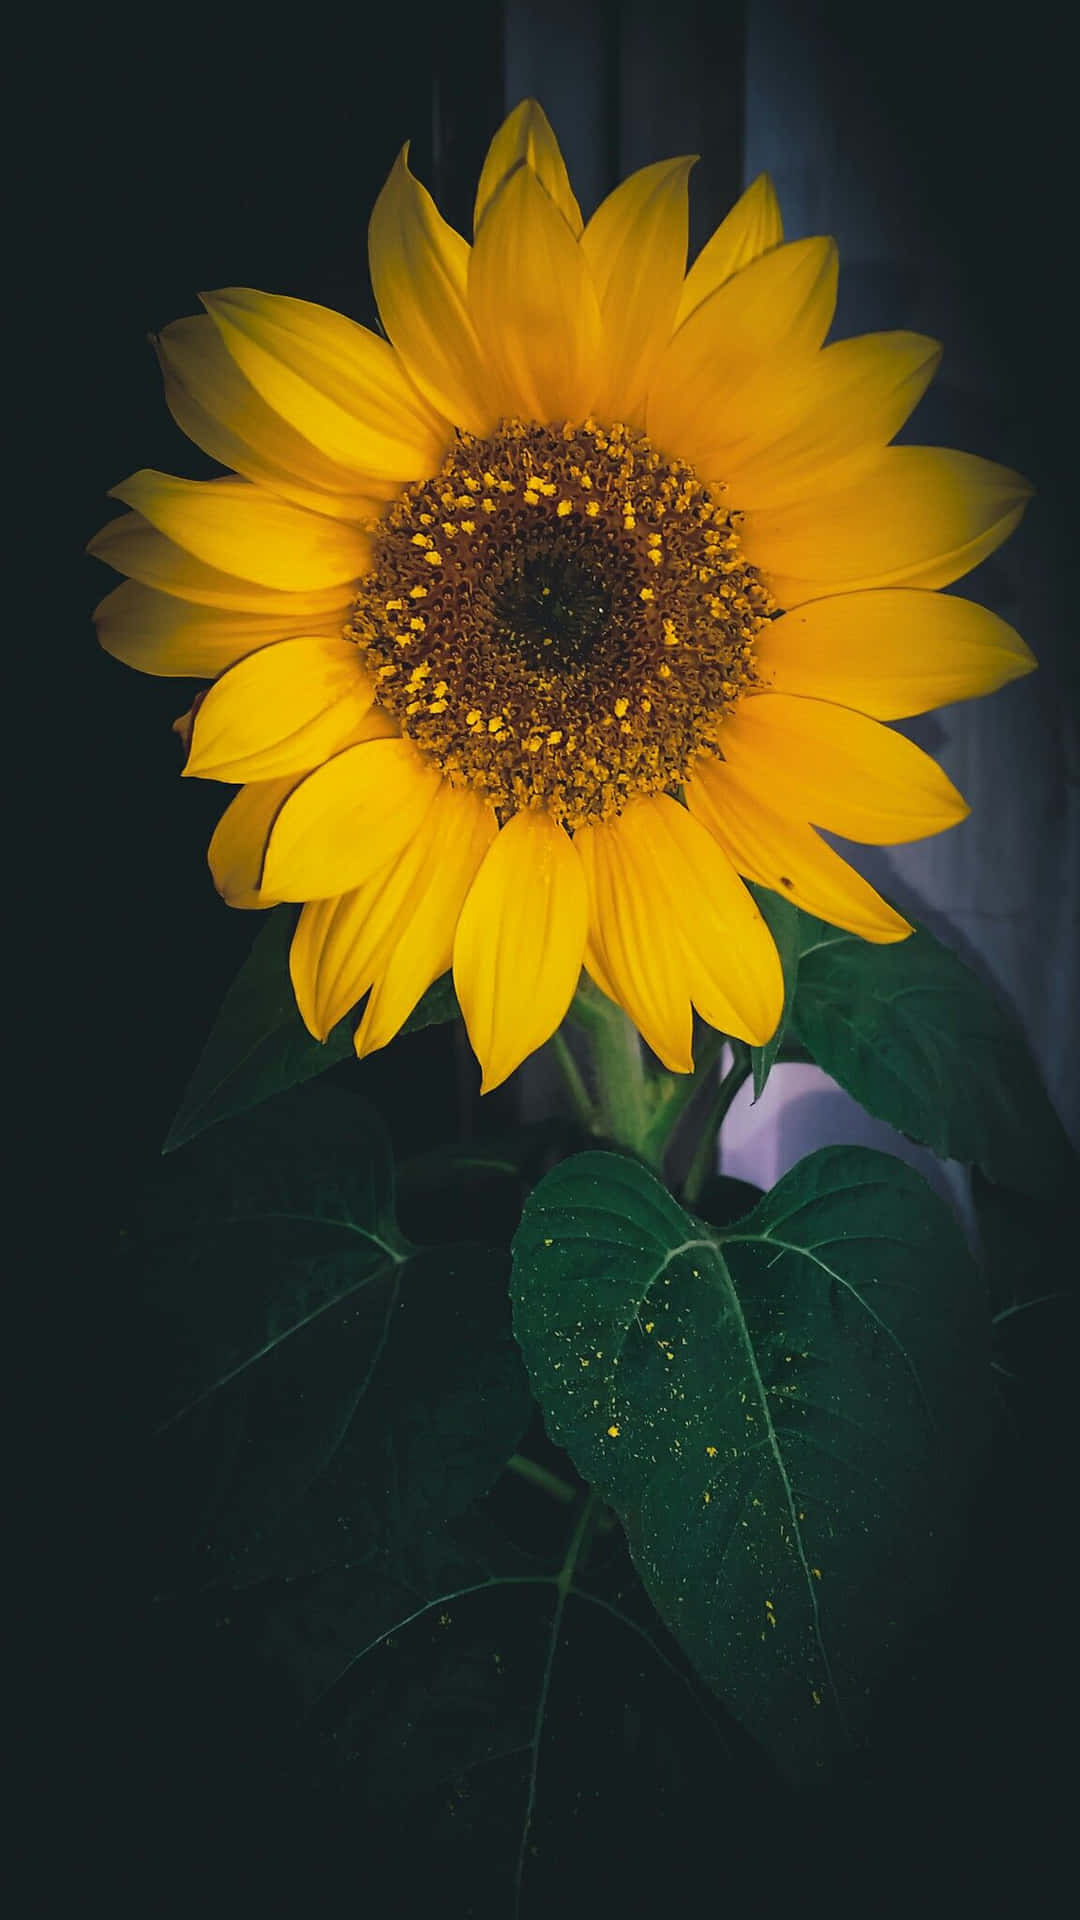 A Sunflower In A Window Wallpaper